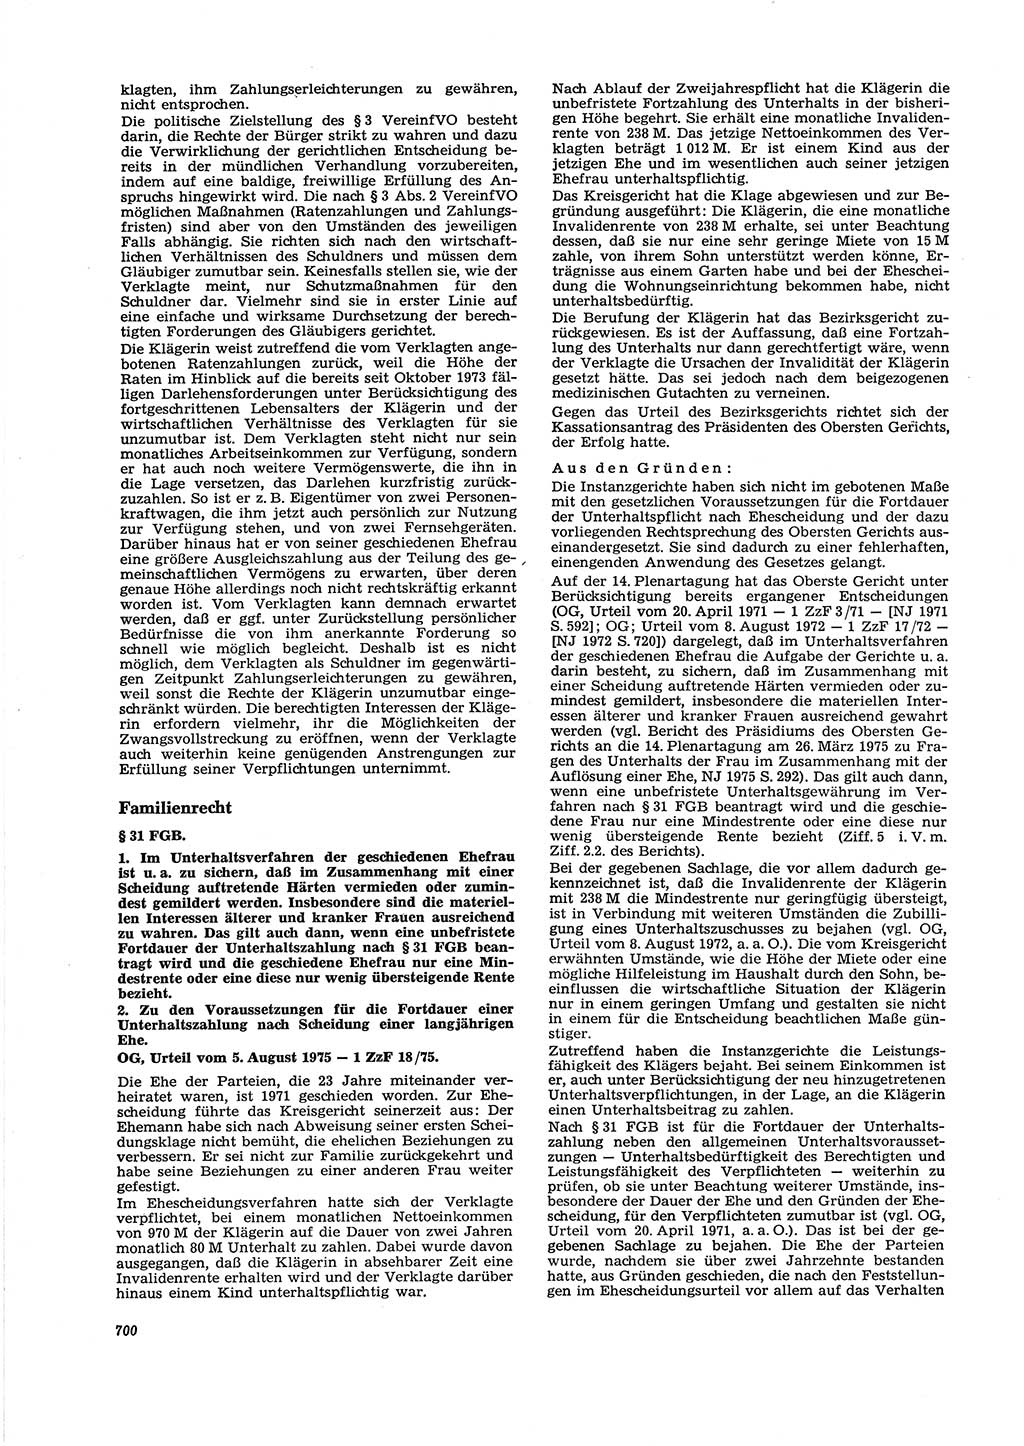 Neue Justiz (NJ), Zeitschrift für Recht und Rechtswissenschaft [Deutsche Demokratische Republik (DDR)], 29. Jahrgang 1975, Seite 700 (NJ DDR 1975, S. 700)